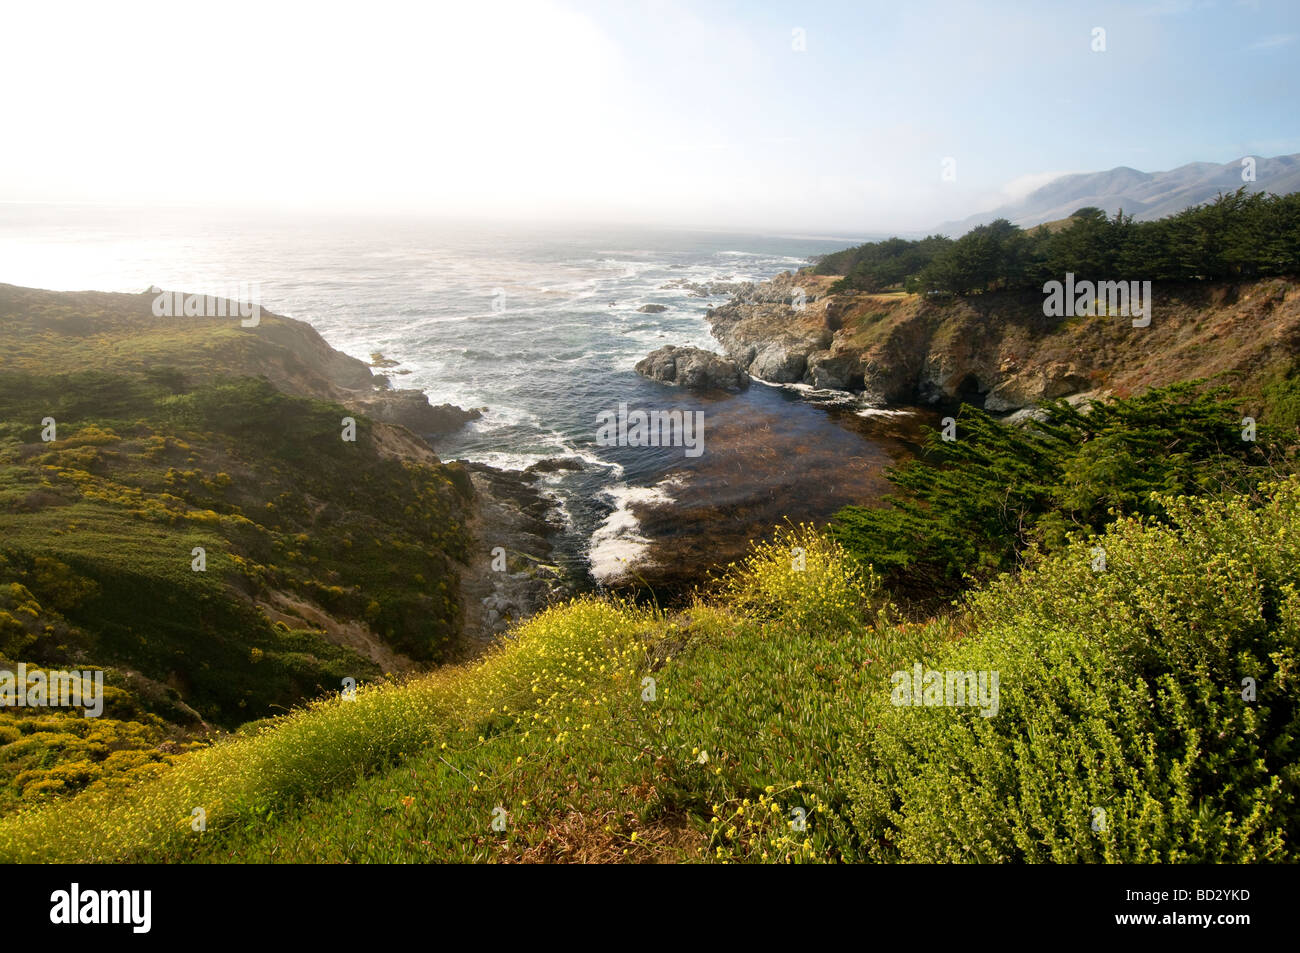 Les fleurs sauvages le long de la côte rocheuse de Big Sur Californie Banque D'Images